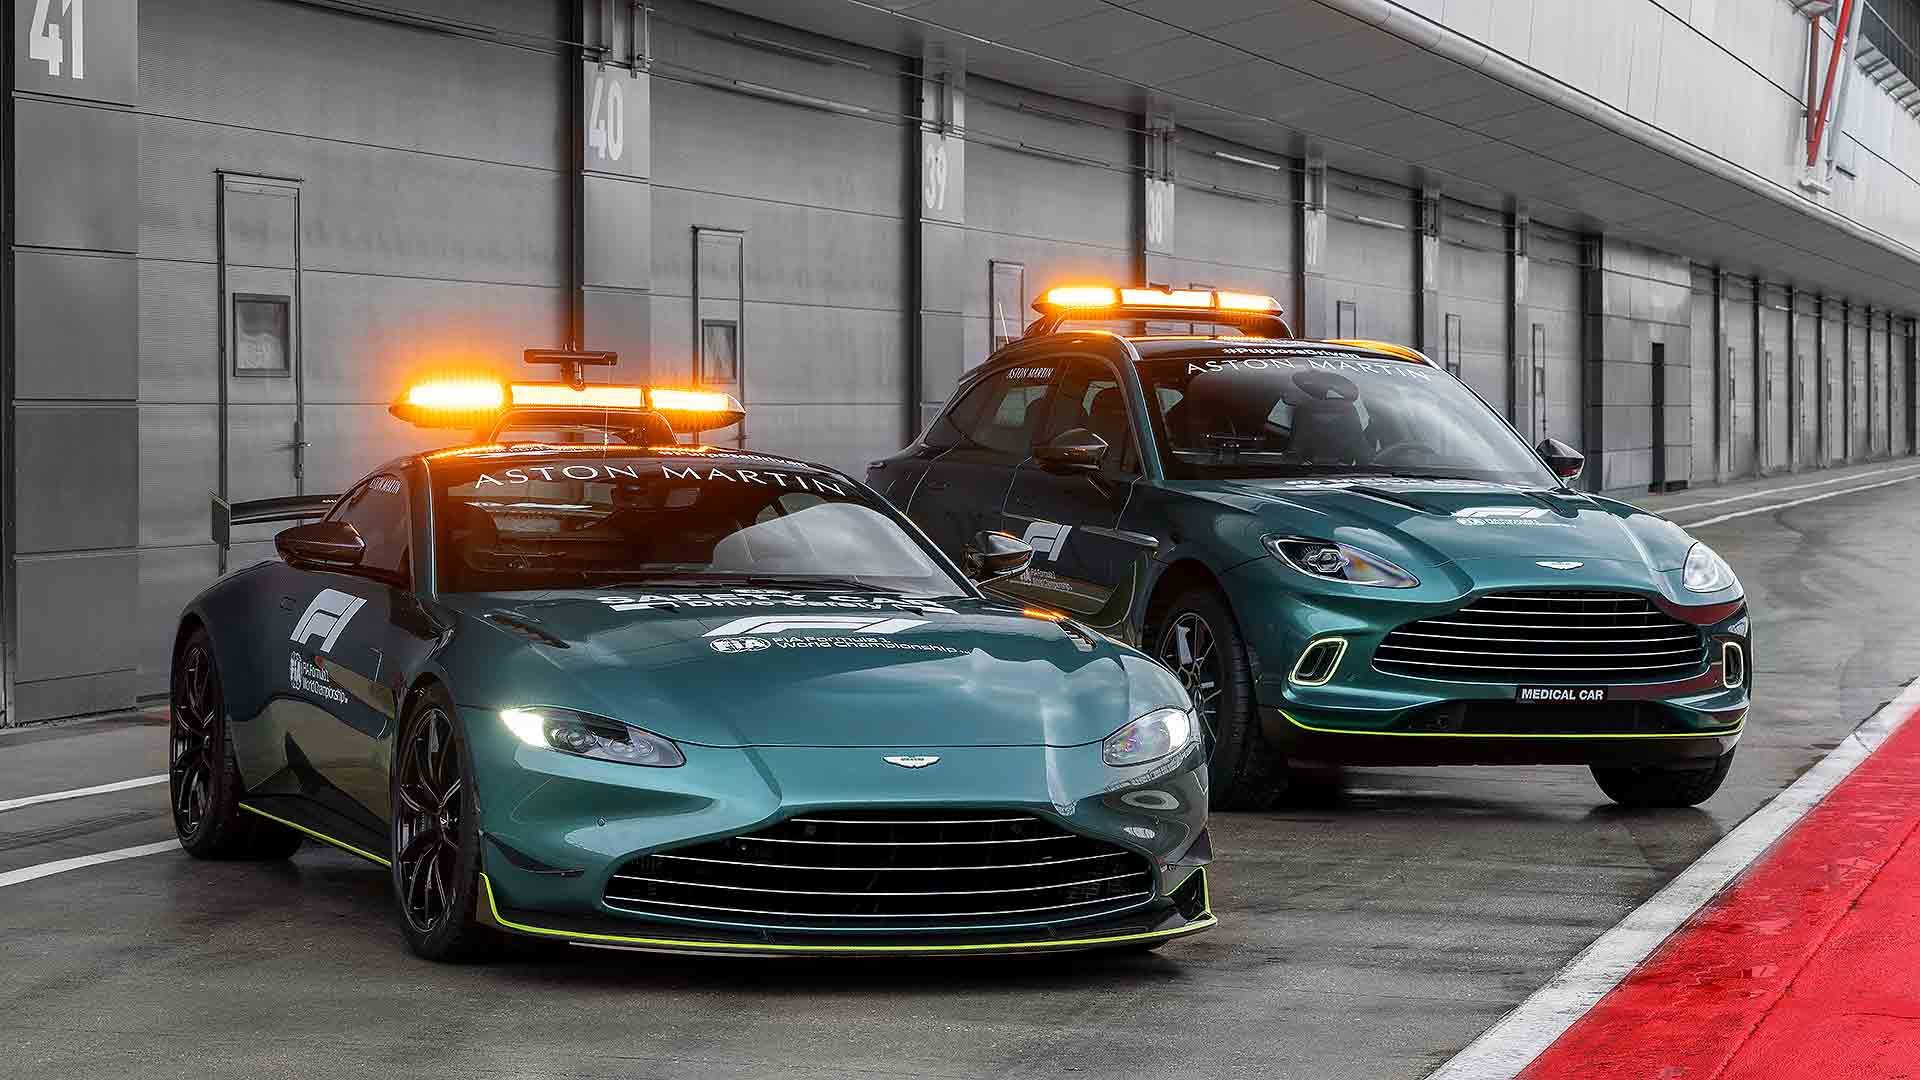 Aston Martin F1 safety cars